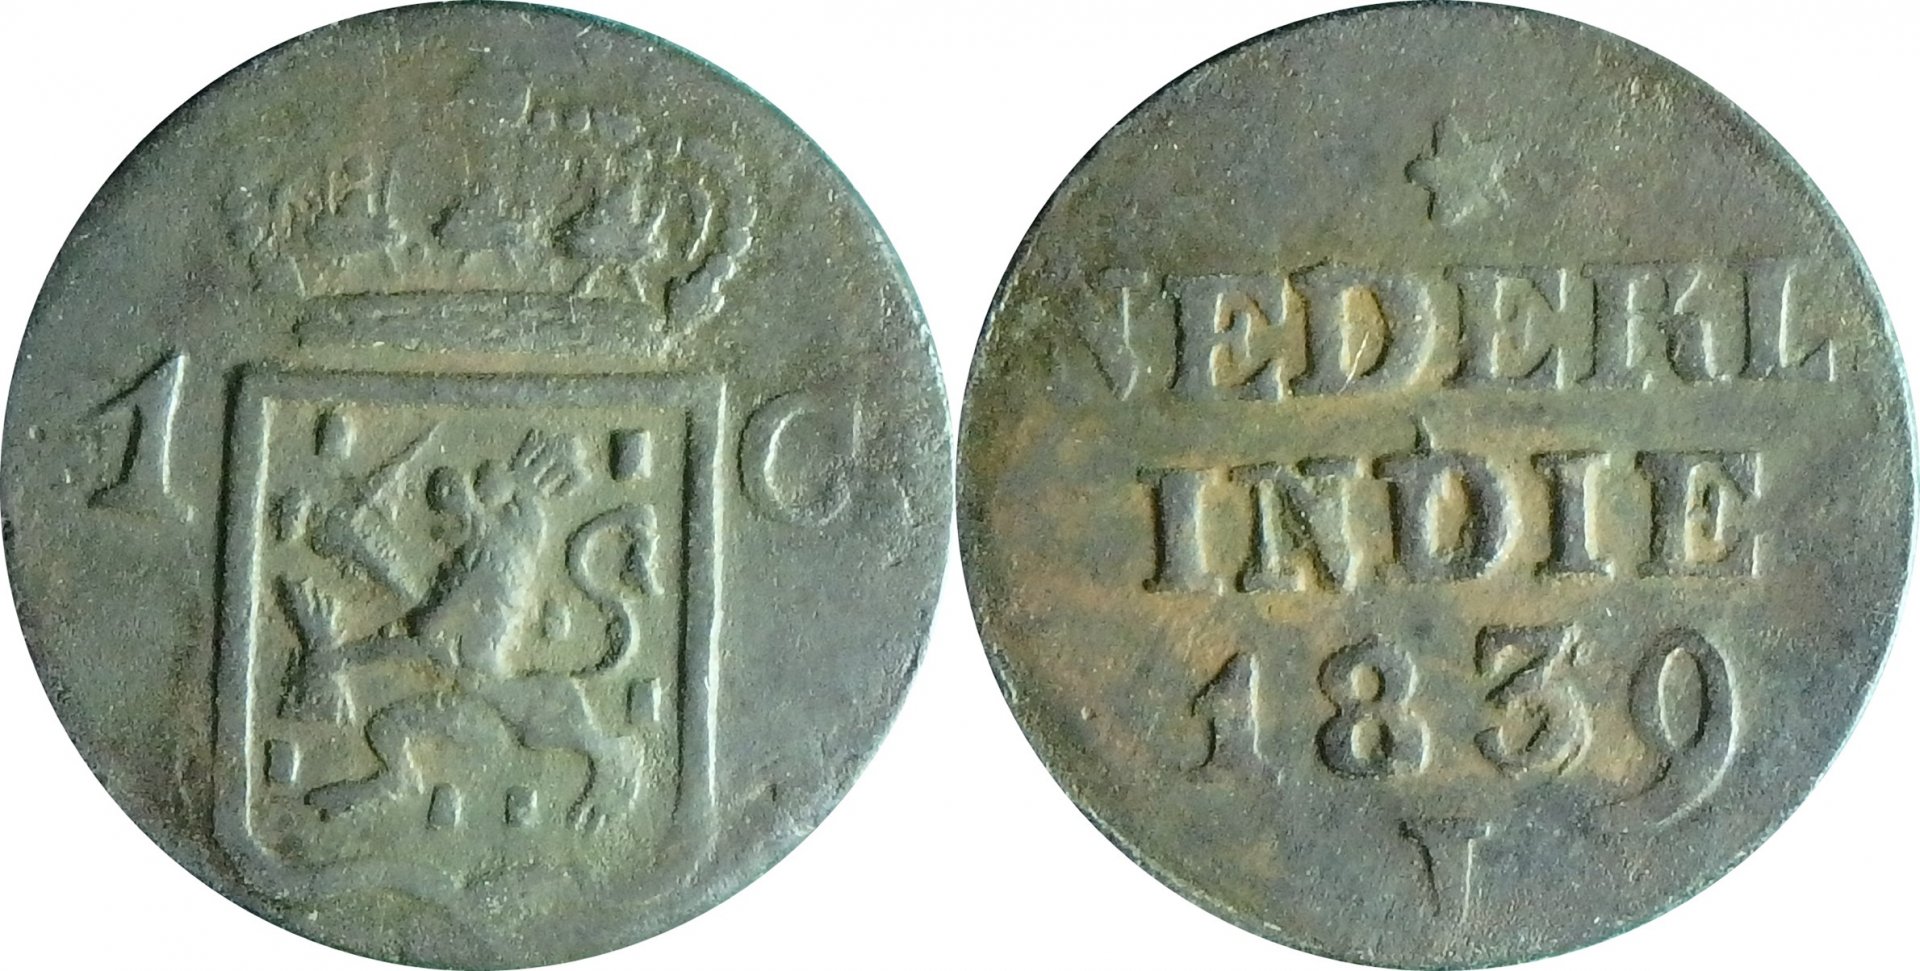 1839 J NI 1 c.jpg